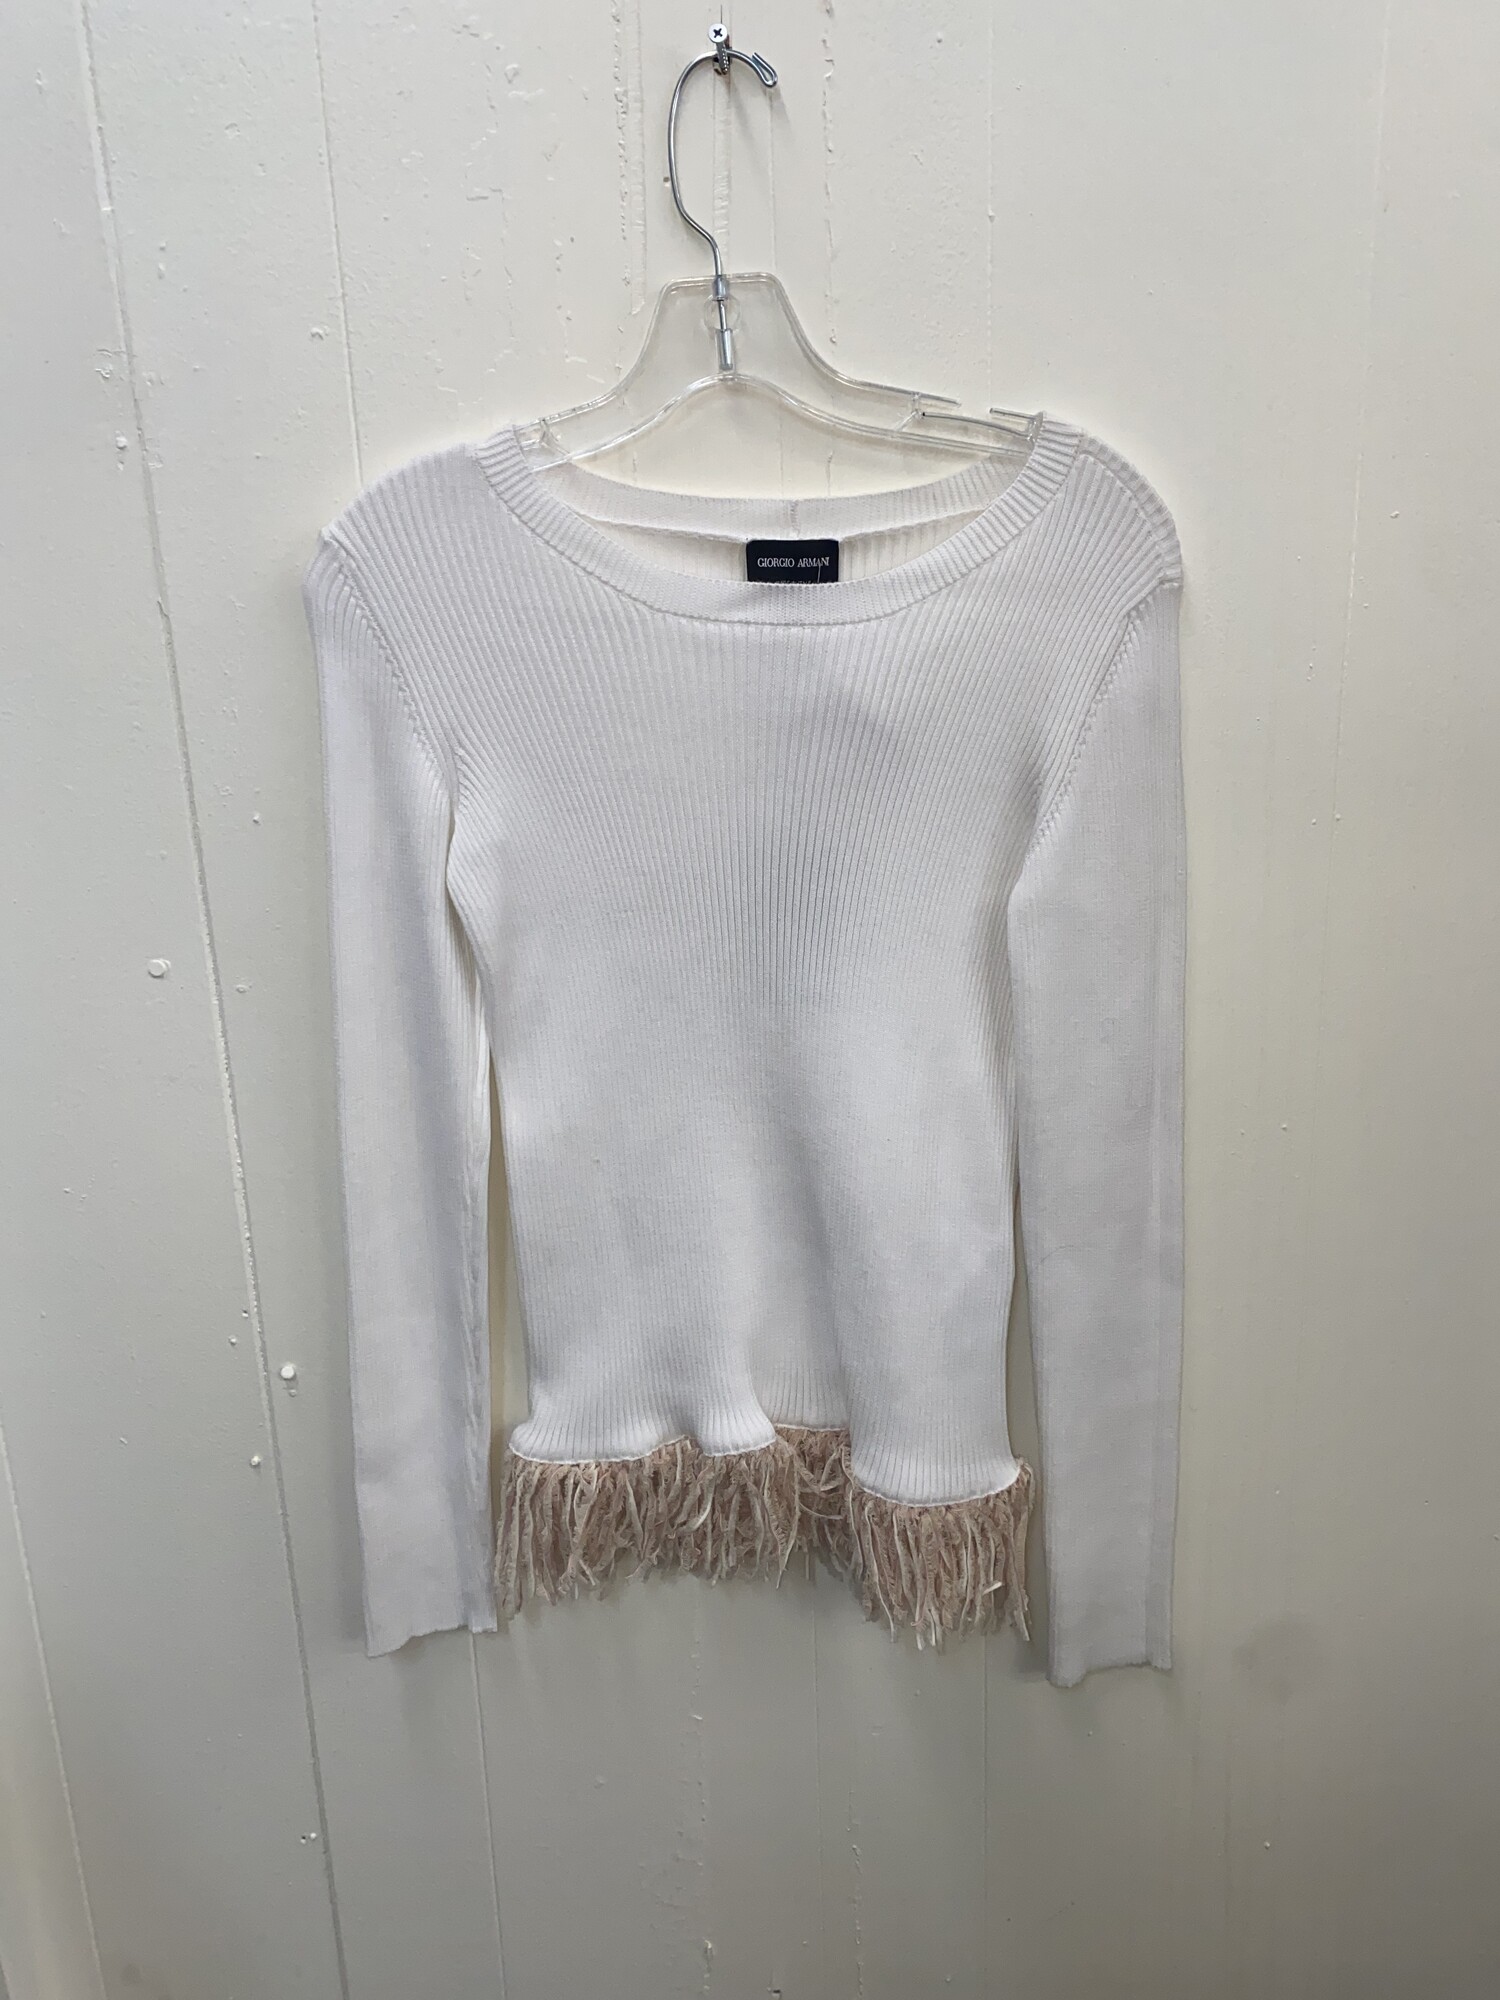 Sweater Ribbed Fringe Hem, White, Size: 42/sm